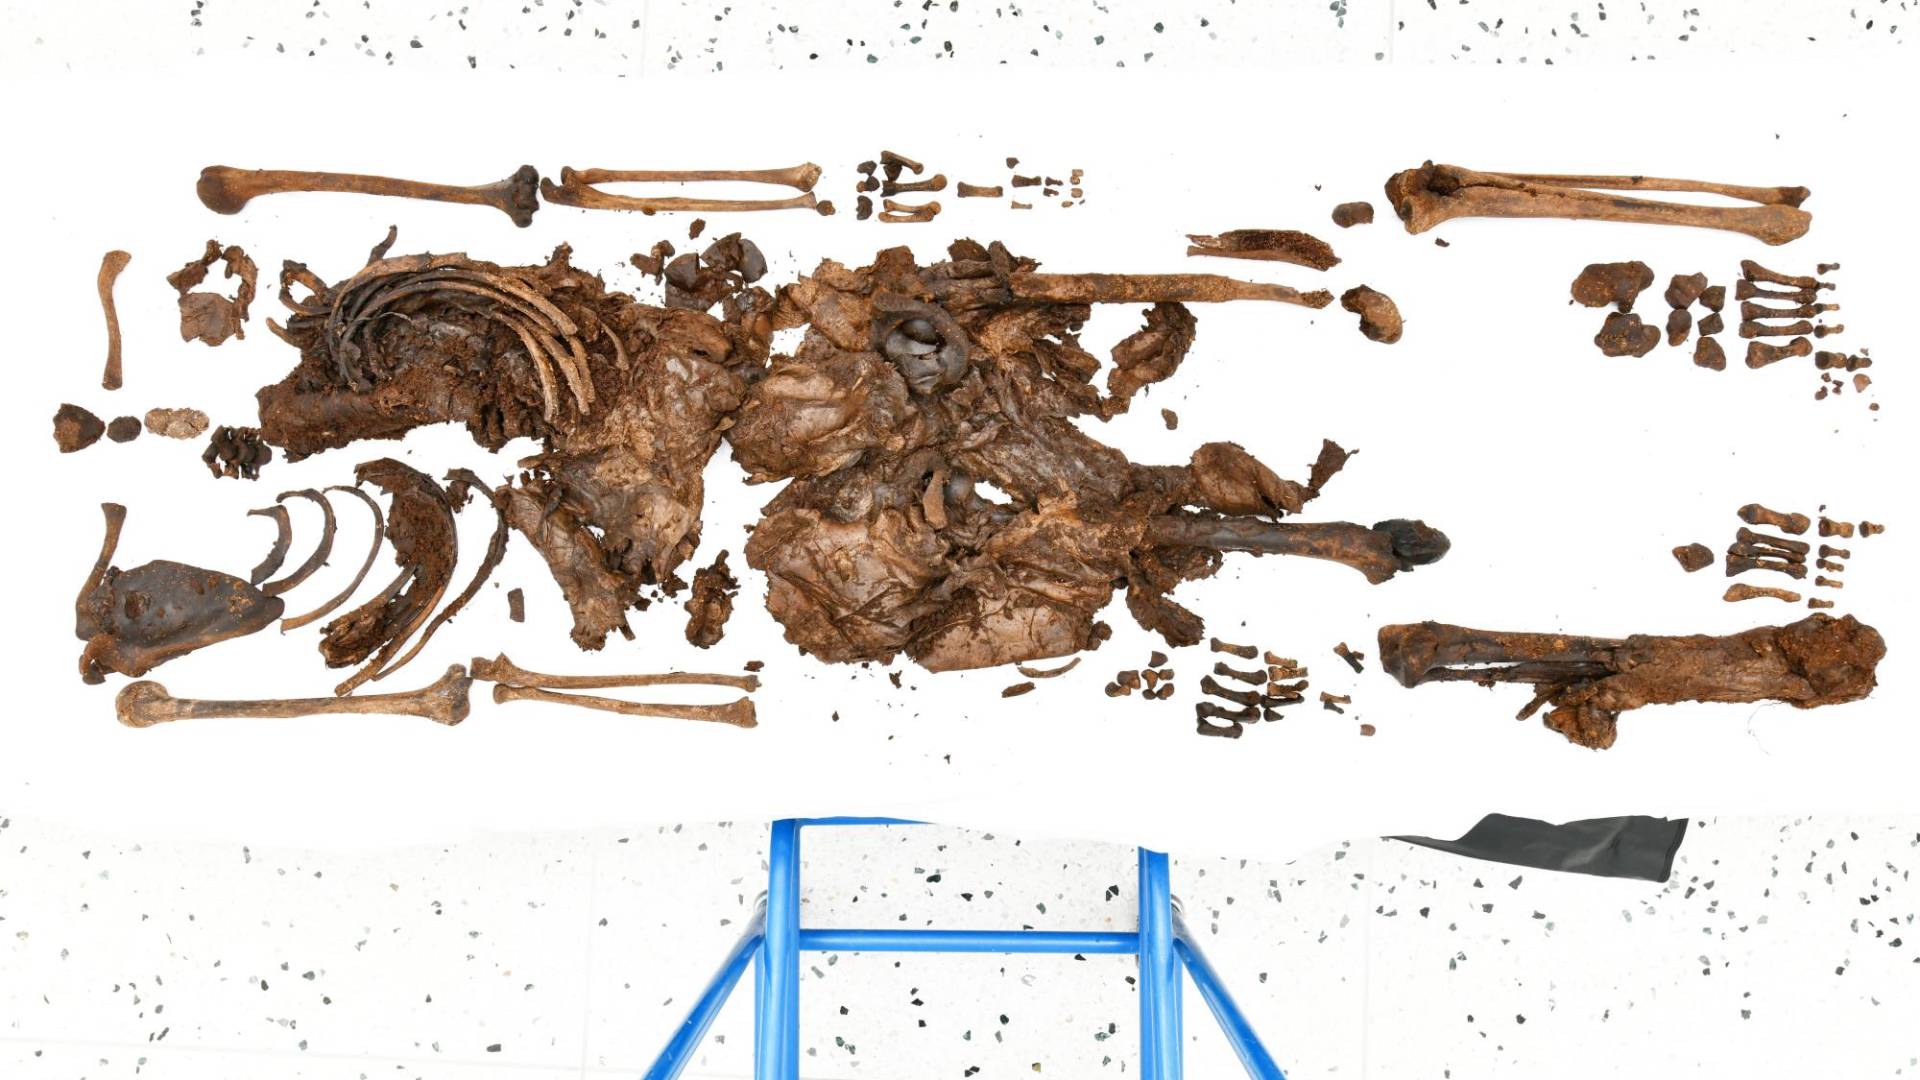 $!Los huesos de un adolescente de la Edad del Hierro tienen unos 2 mil 300 años. Surgieron de una turbera.